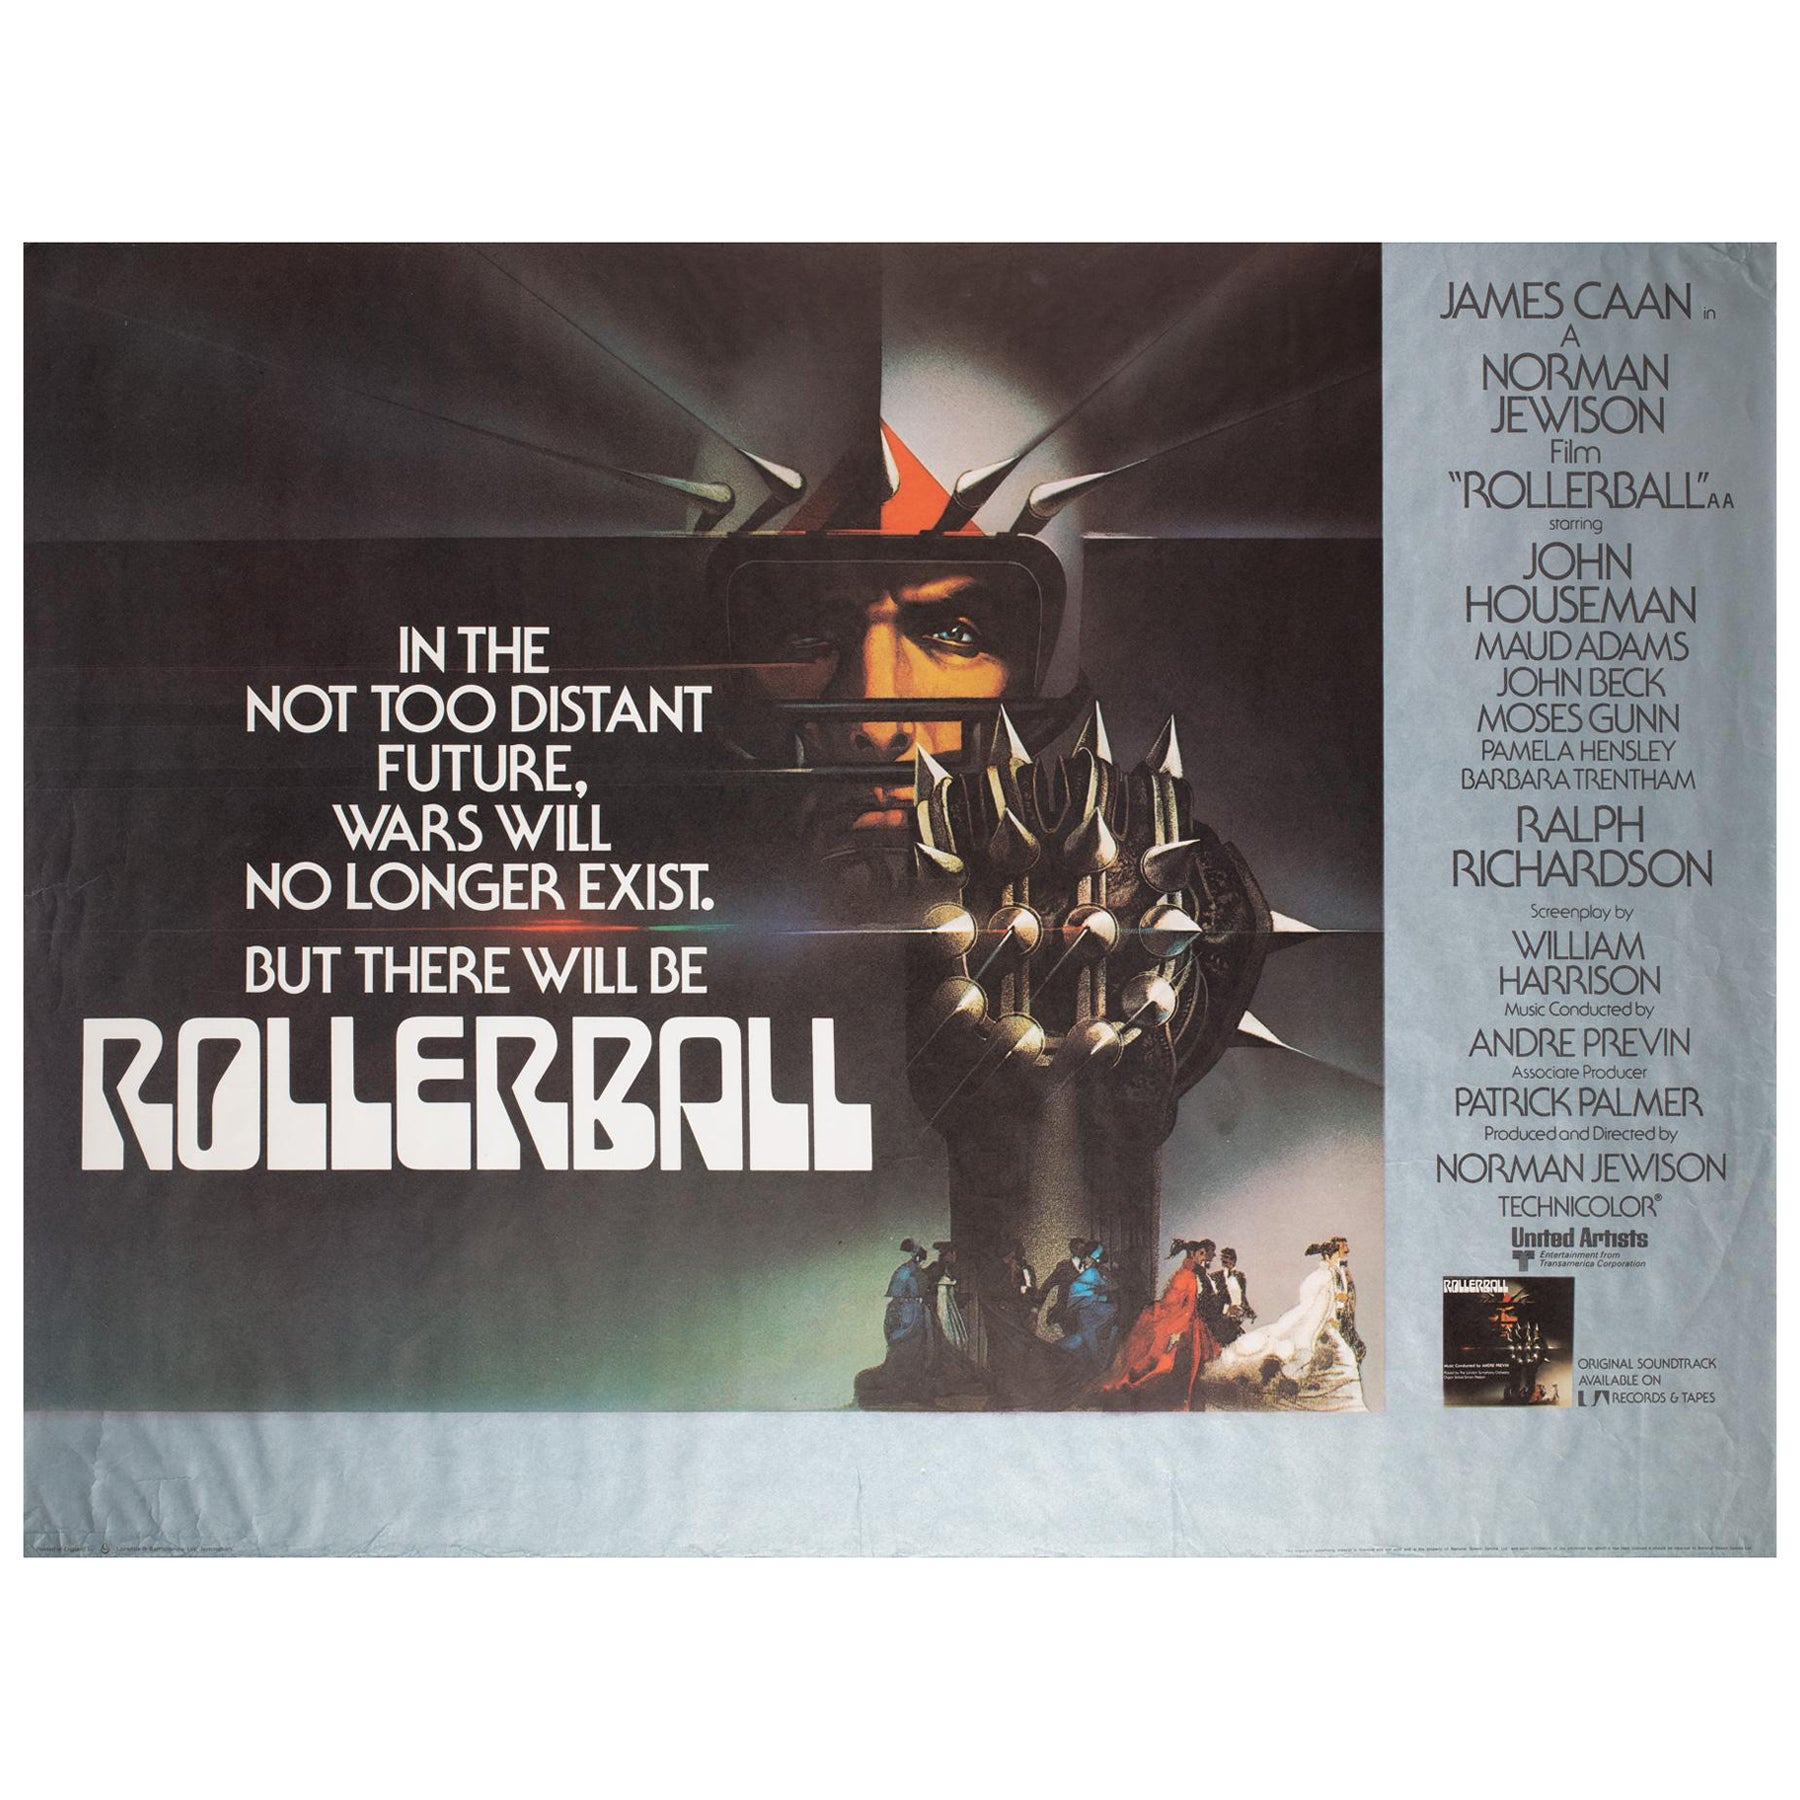 Affiche du film Quad UK Rollerball 1975, Bob Peak